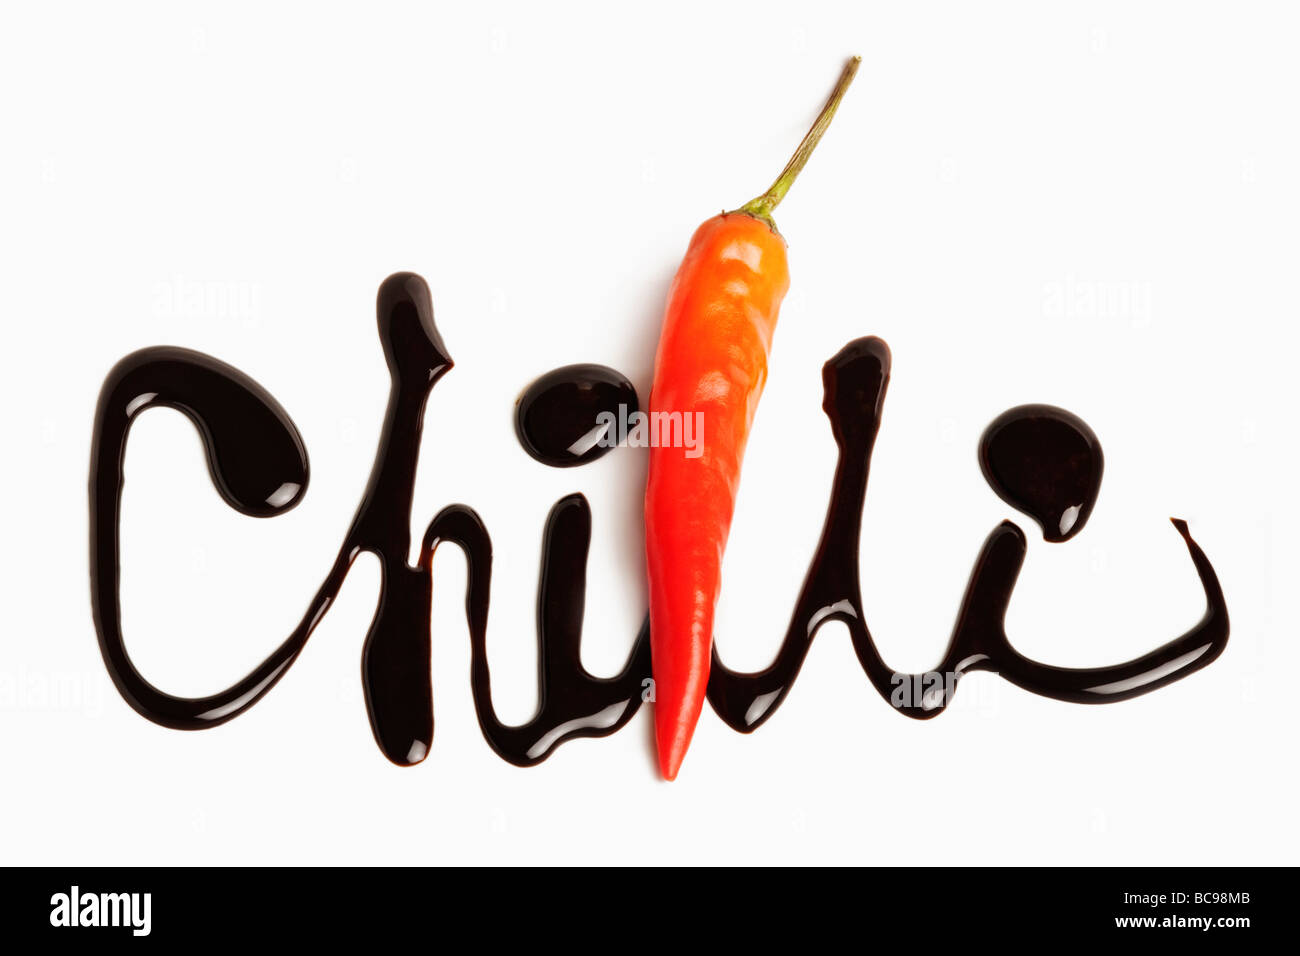 Le mot écrit en rouge Chili Chocolat Piment utilisé dans le cadre de la parole contre l'arrière-plan blanc Banque D'Images